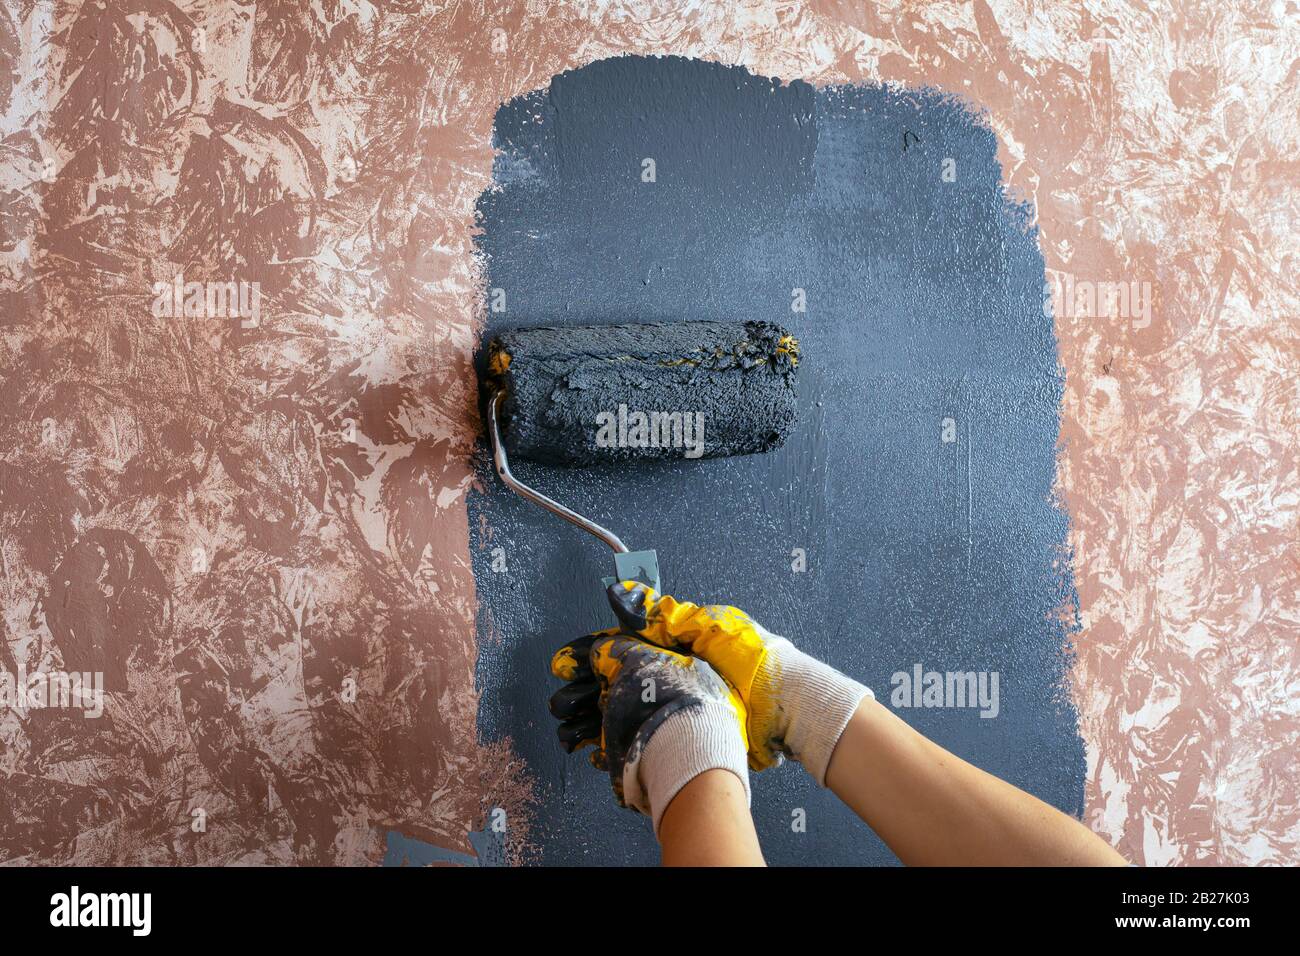 Lackierung der Wand mit einem walzengrauen Lack, Lackierung mit gelben Arbeitshandschuhen, Reparatur von Lackierwerkzeugen. Stockfoto